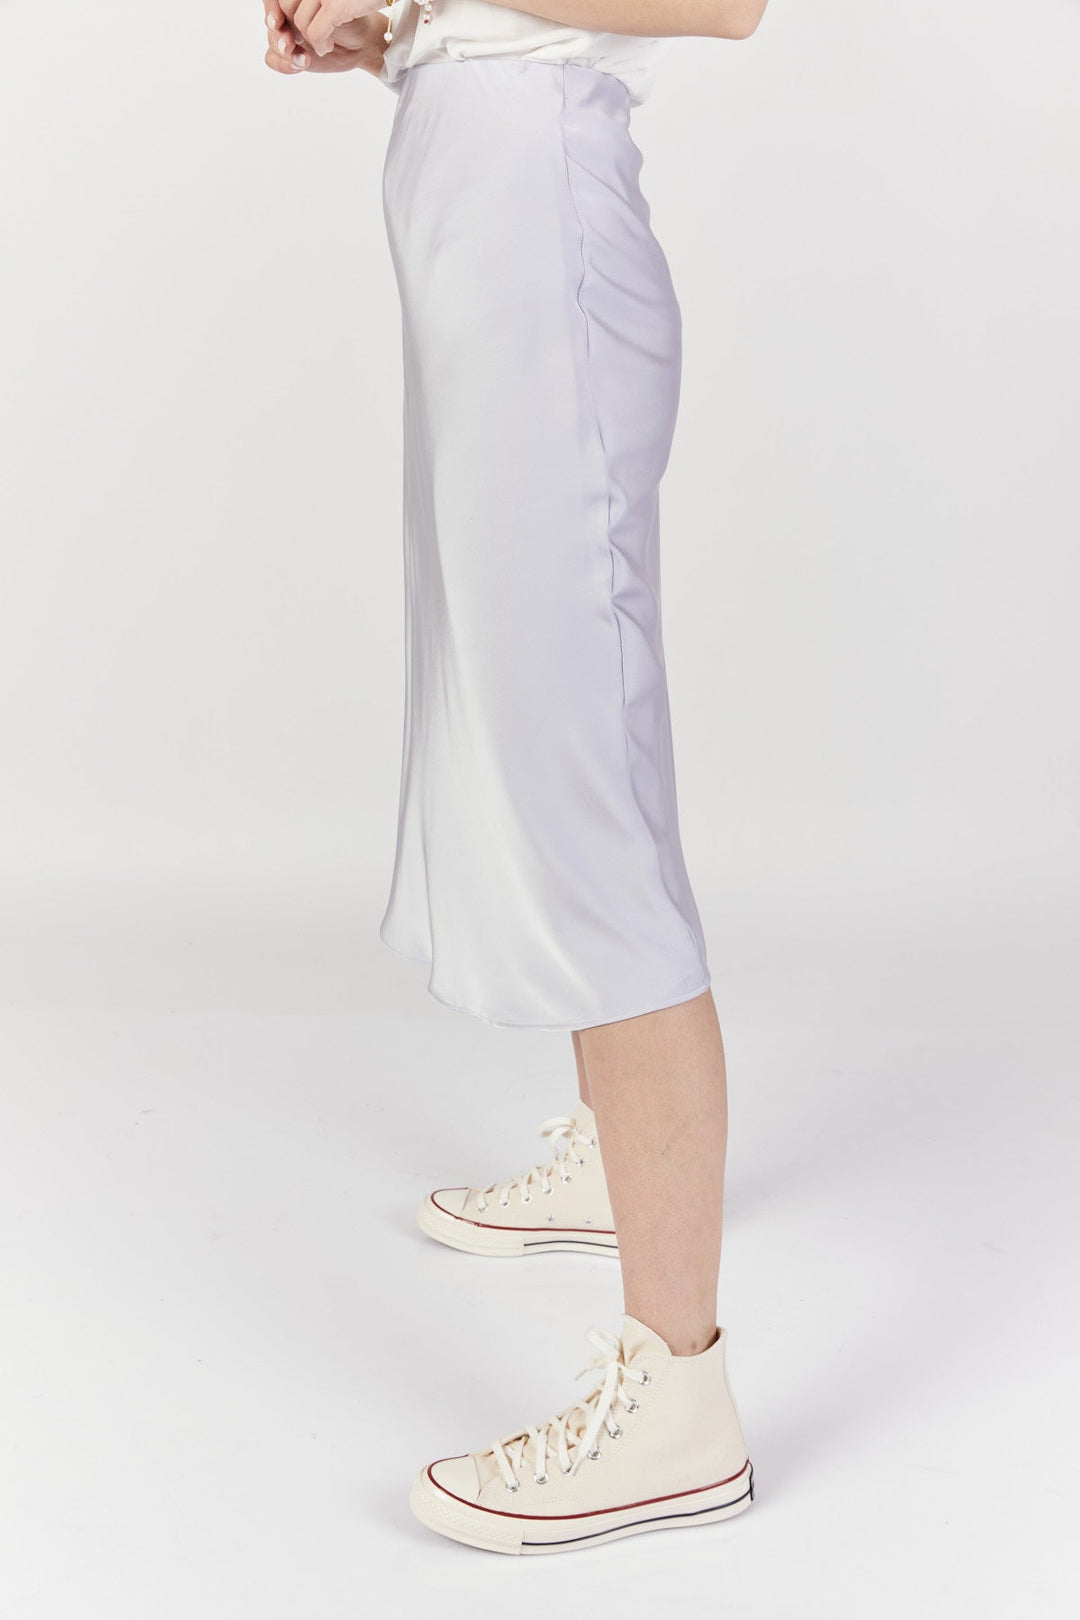 חצאית מידי בלאנק בצבע תכלת - Razili Studio